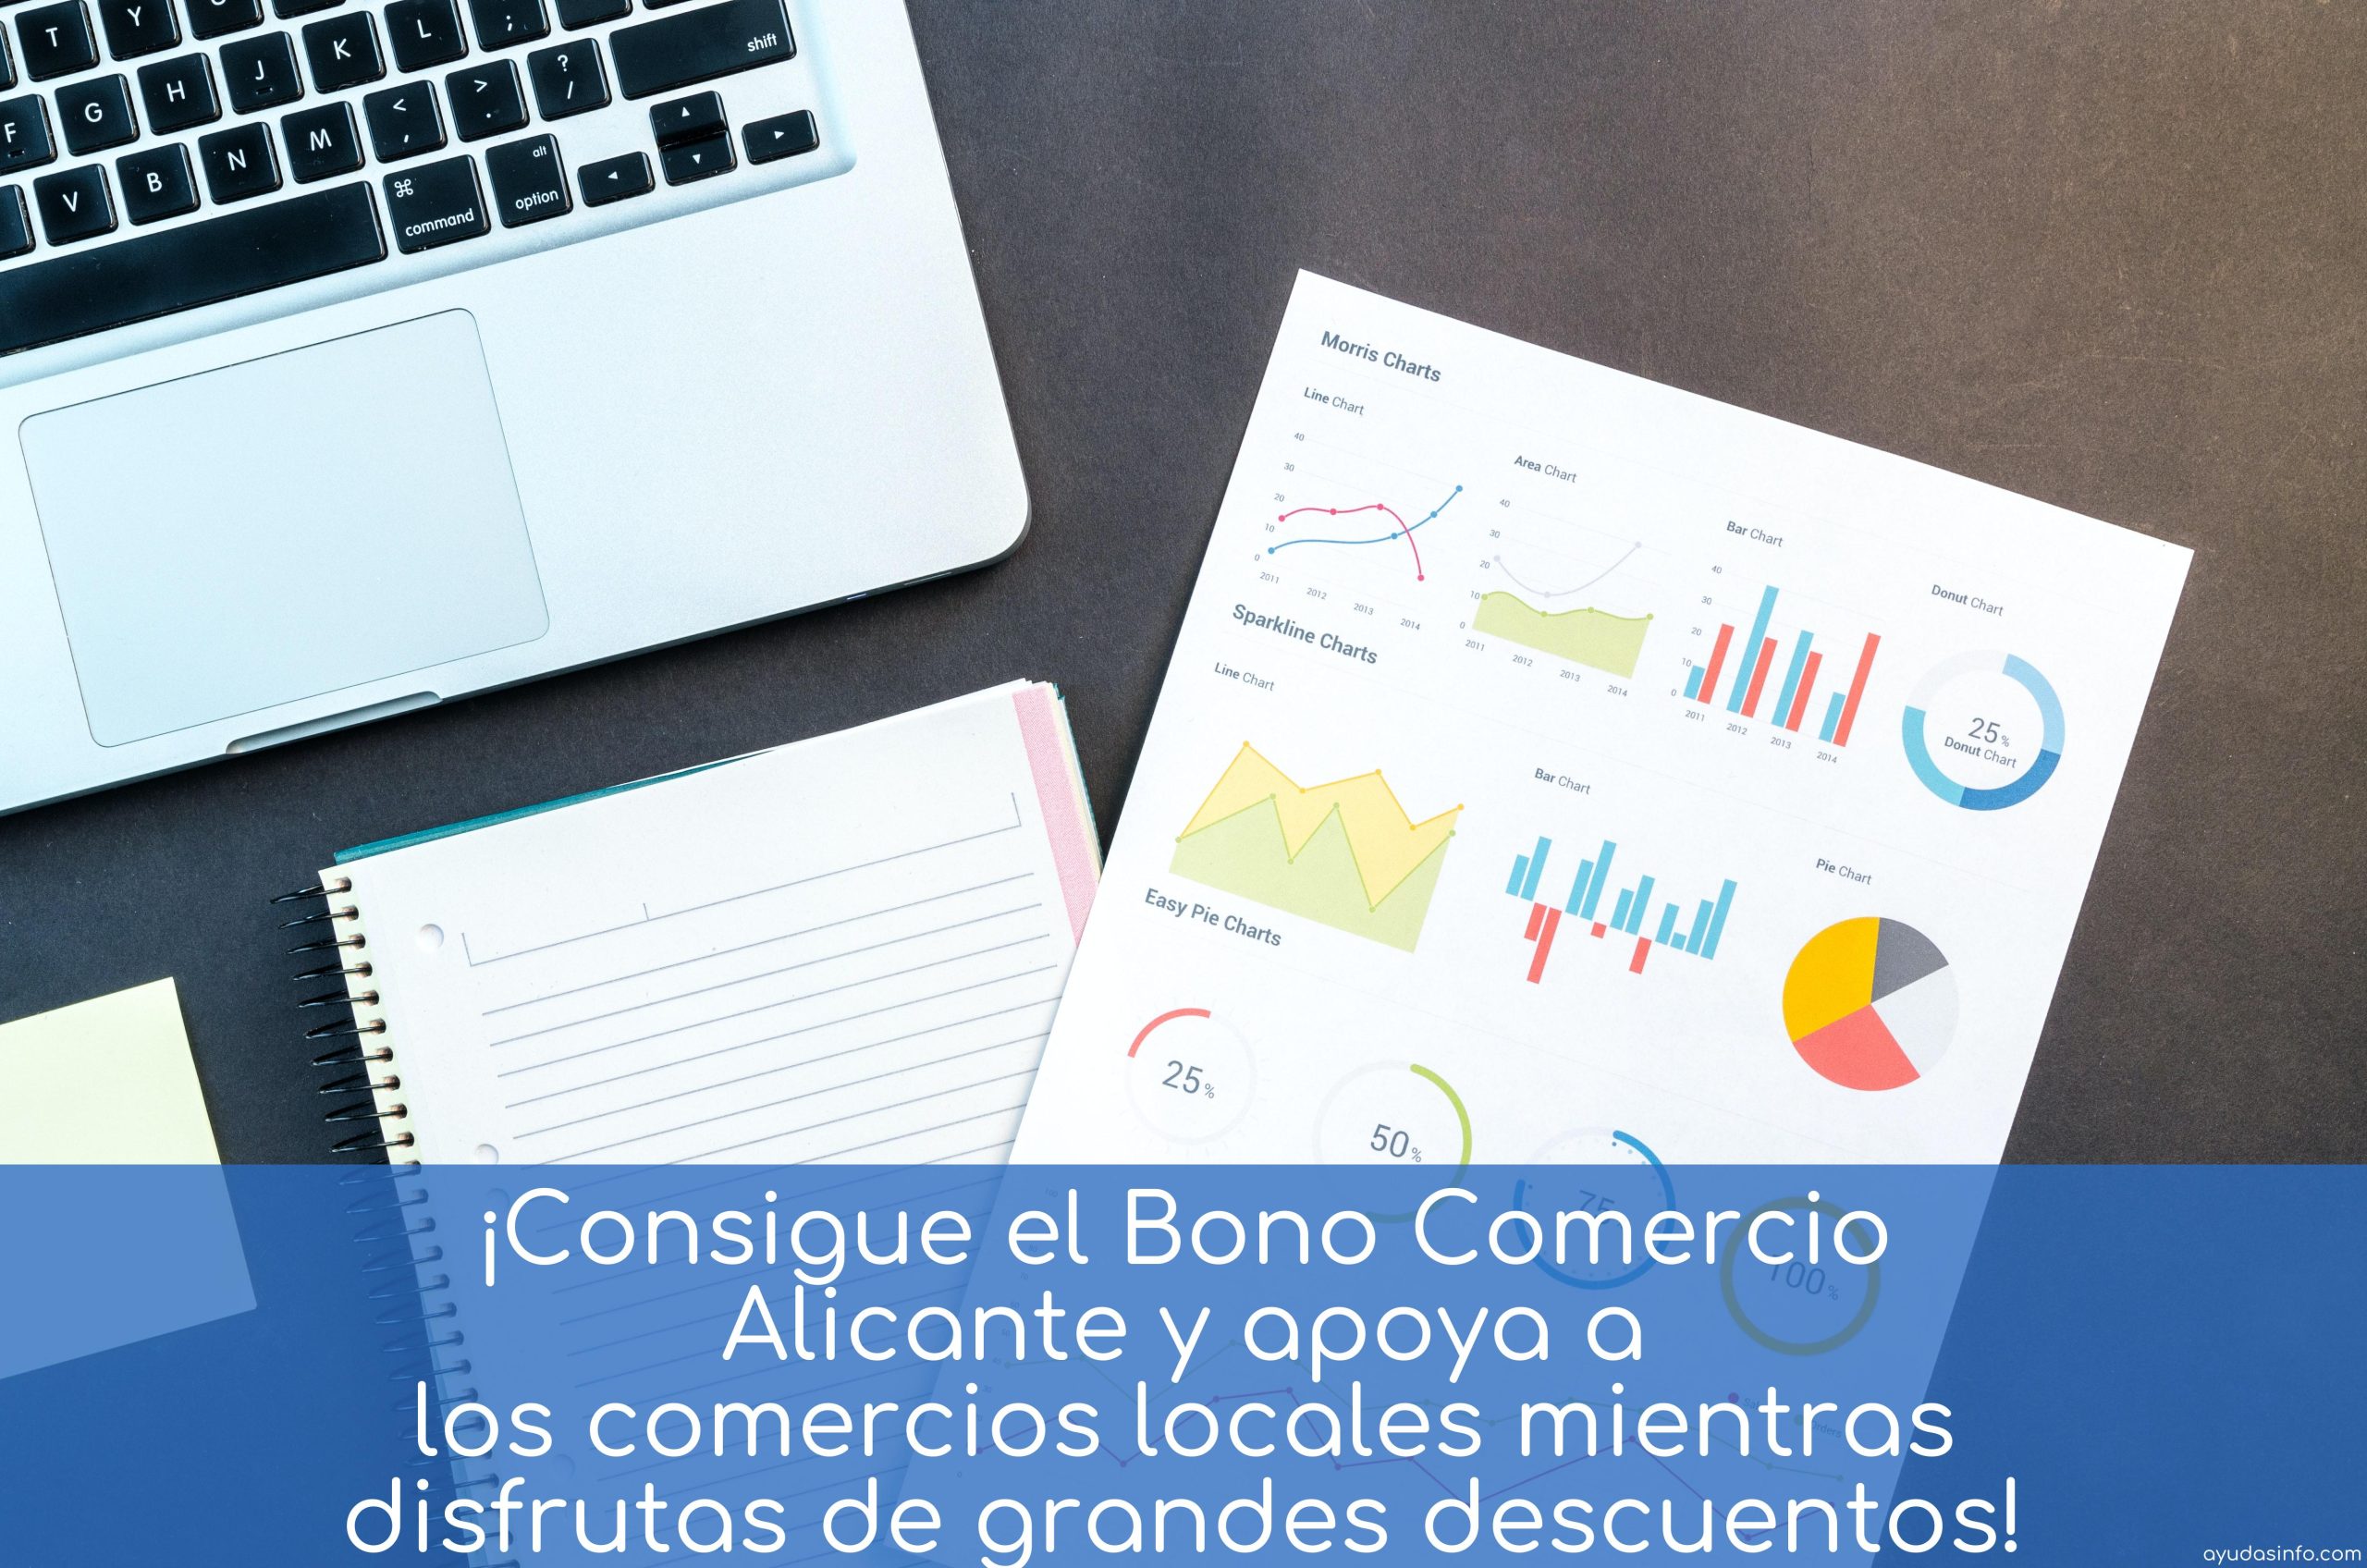 ¡Consigue el Bono Comercio Alicante y apoya a los comercios locales mientras disfrutas de grandes descuentos!